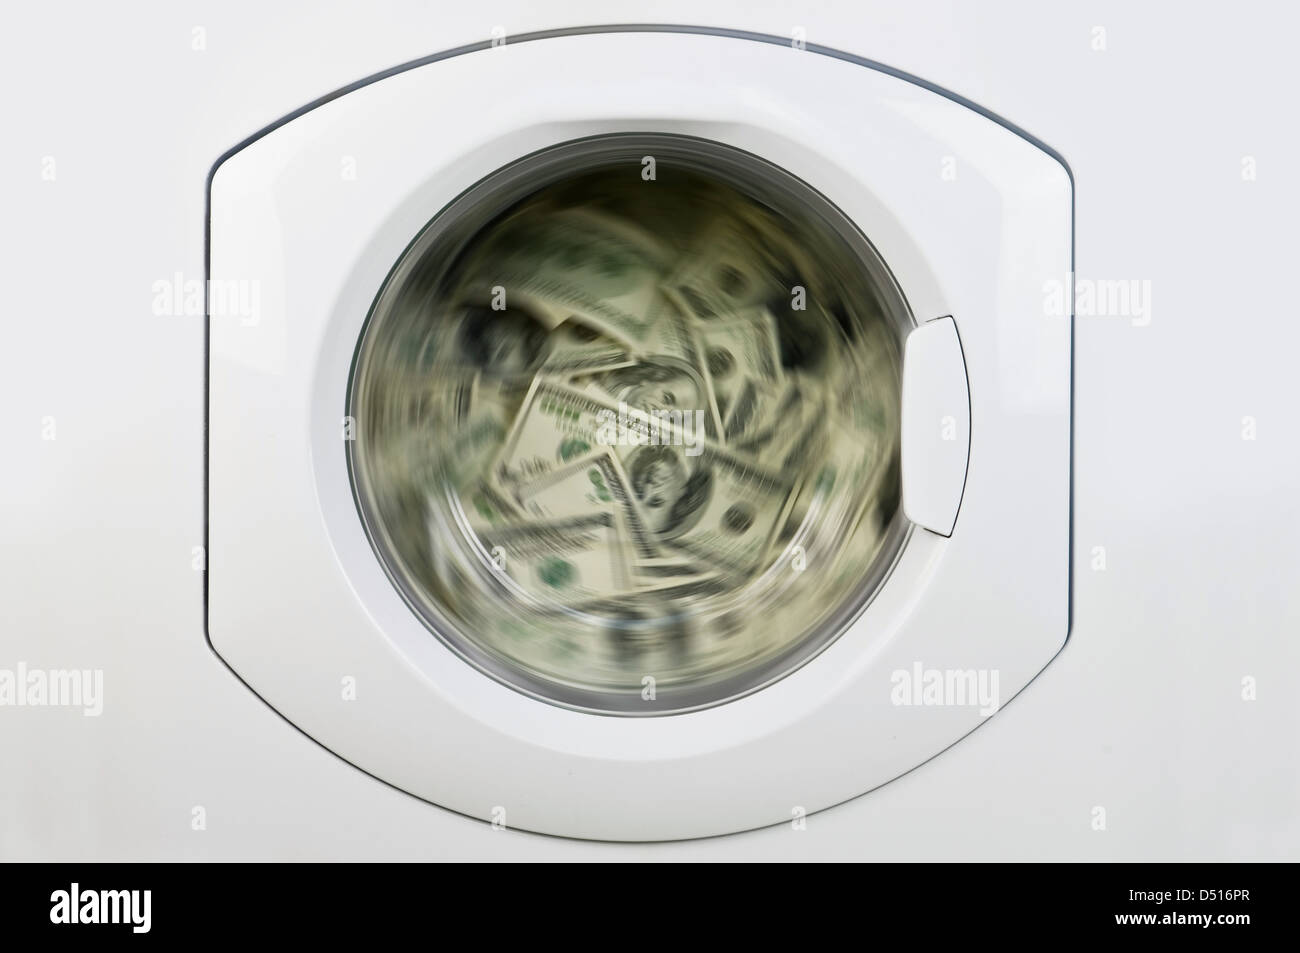 money in washing machine close up Stock Photo